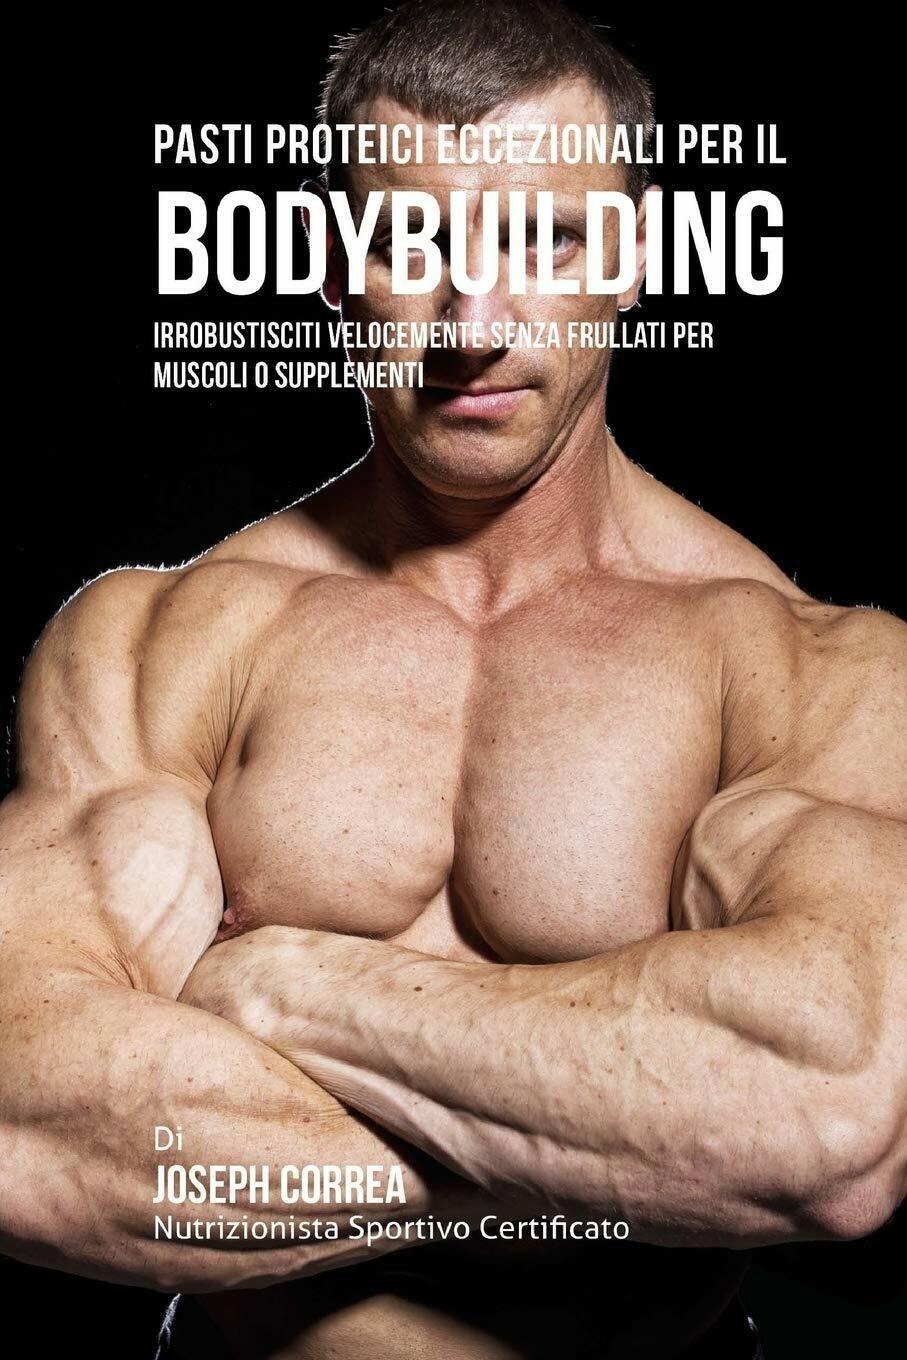 Pasti Proteici Eccezionali Per Il Bodybuilding - Correa - Finibi Inc, 2016